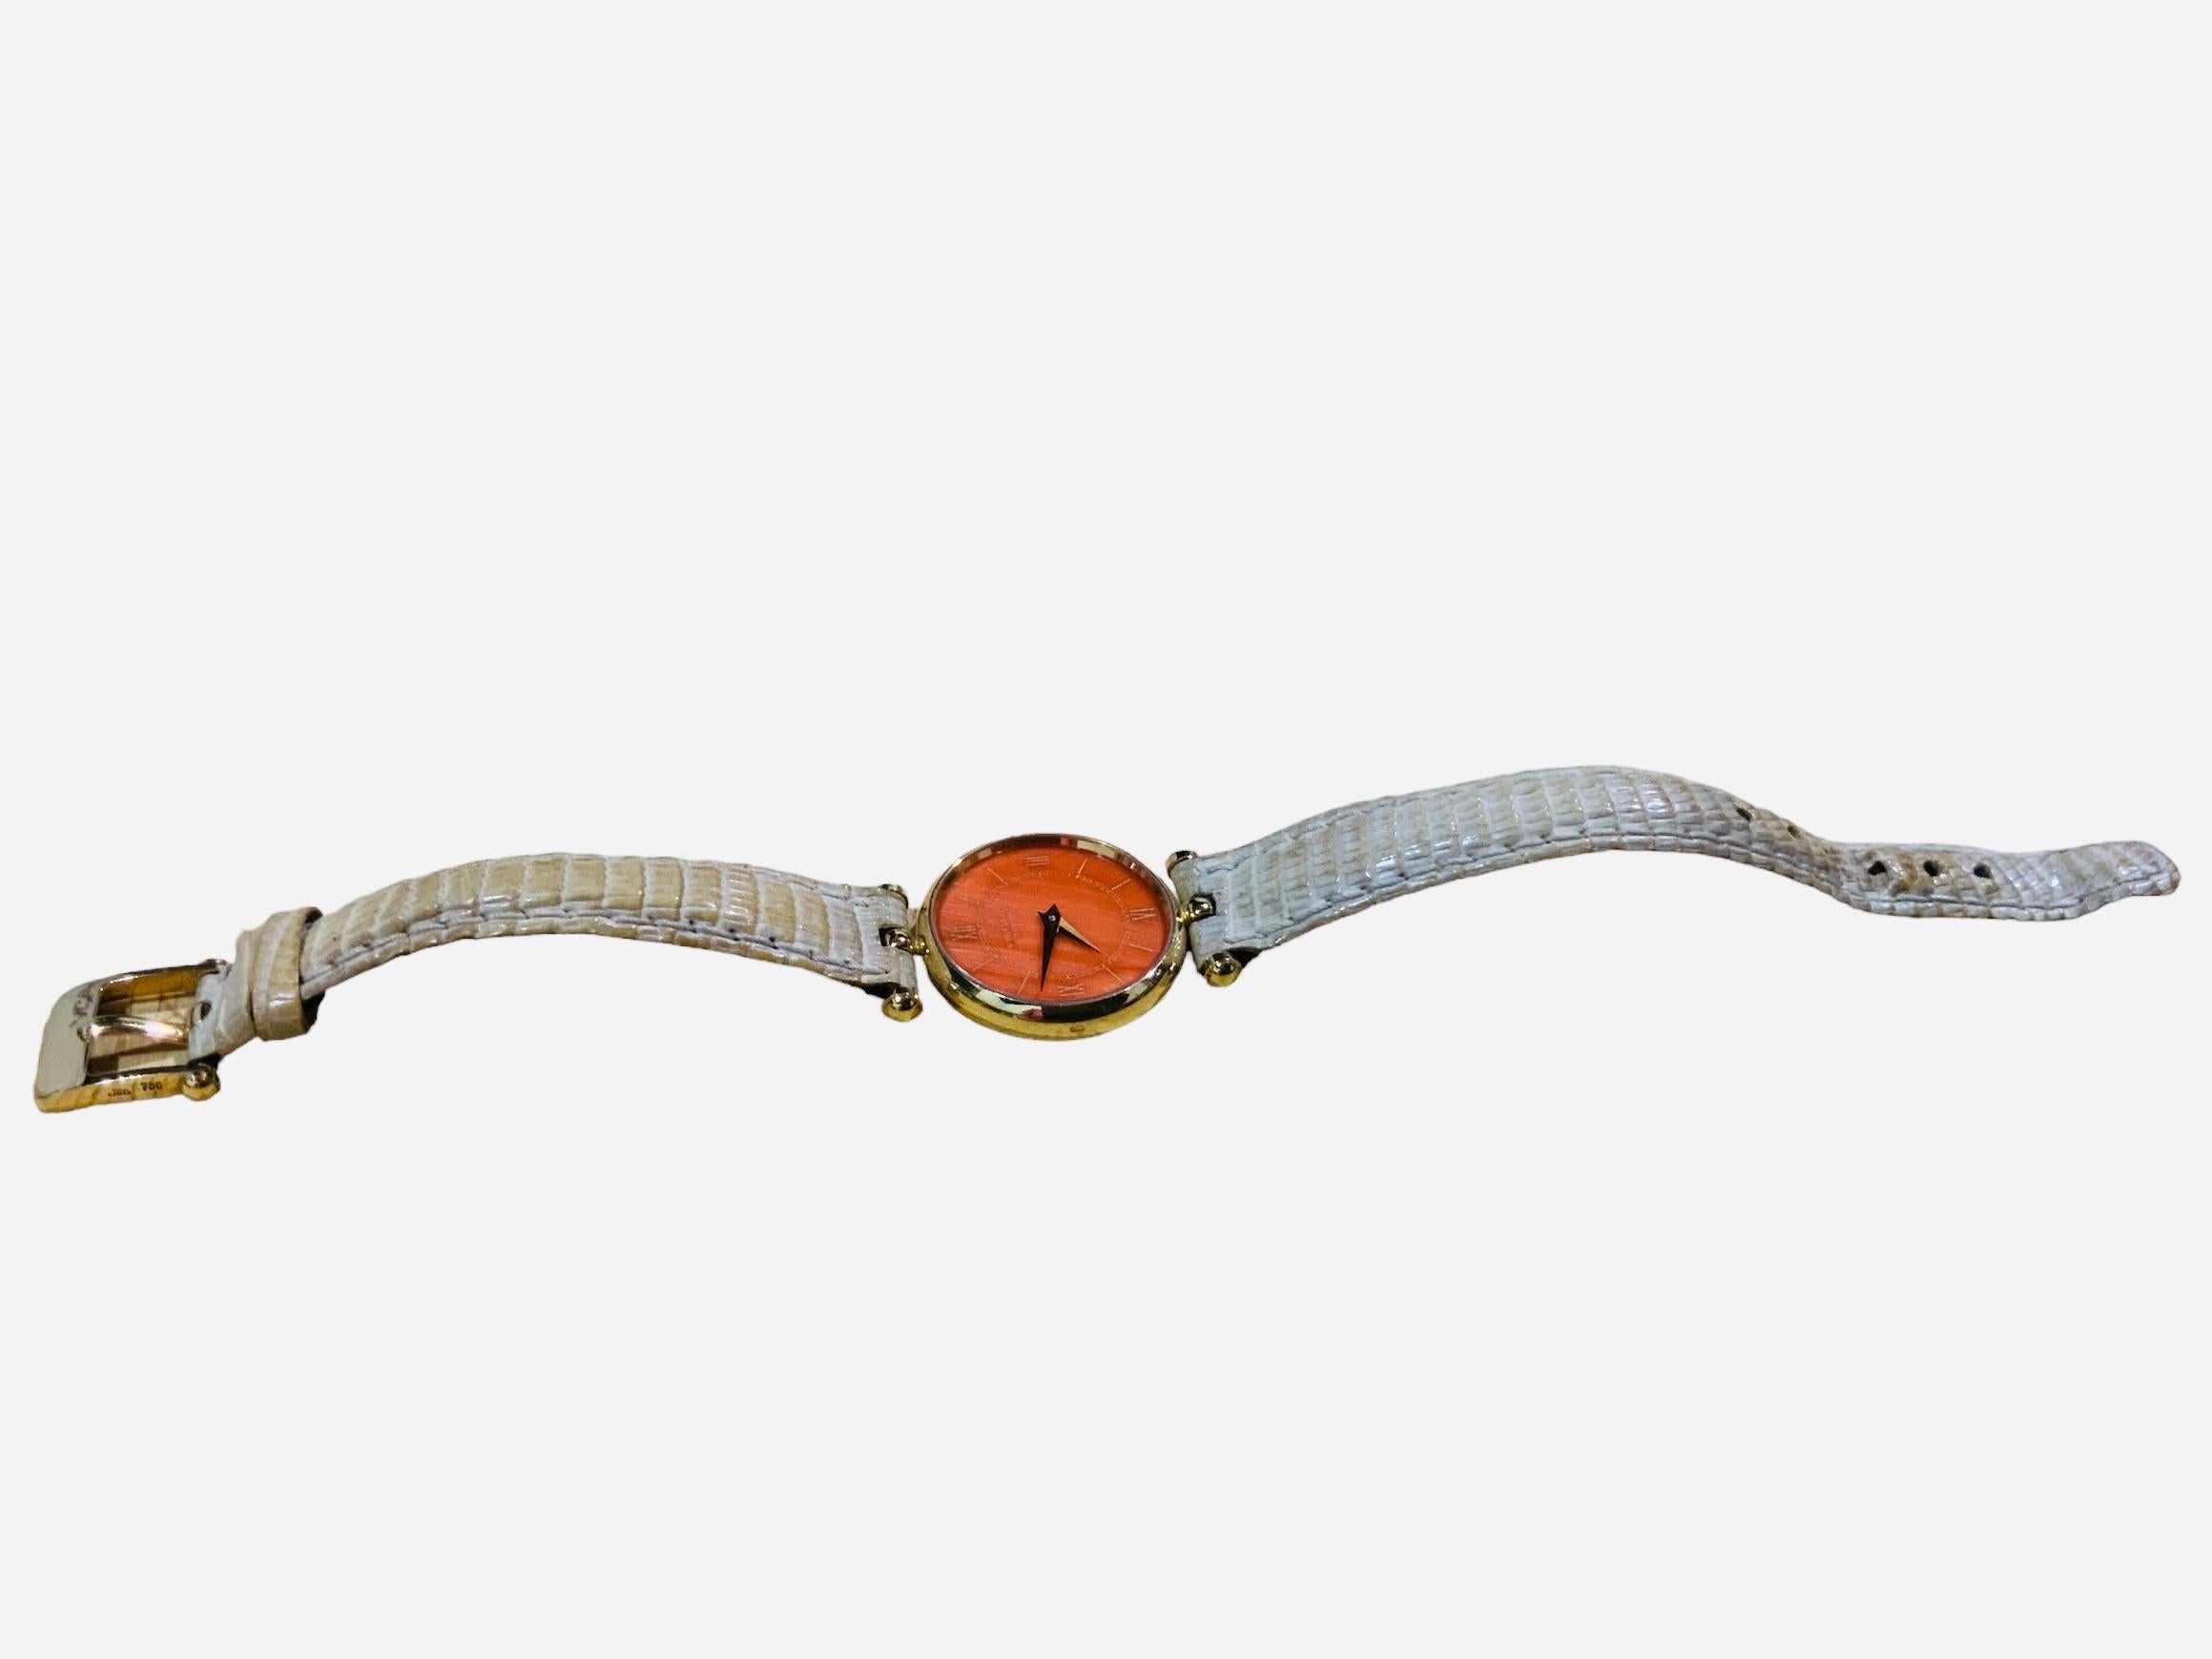 Il s'agit d'une montre-bracelet Van Cleef & Arpels Pierre Arpels pour femme. Elle présente un boîtier rond en or 18 carats/750 avec un cadran de couleur corail comportant des chiffres romains et des aiguilles heures/minutes en or. Une vitre recouvre